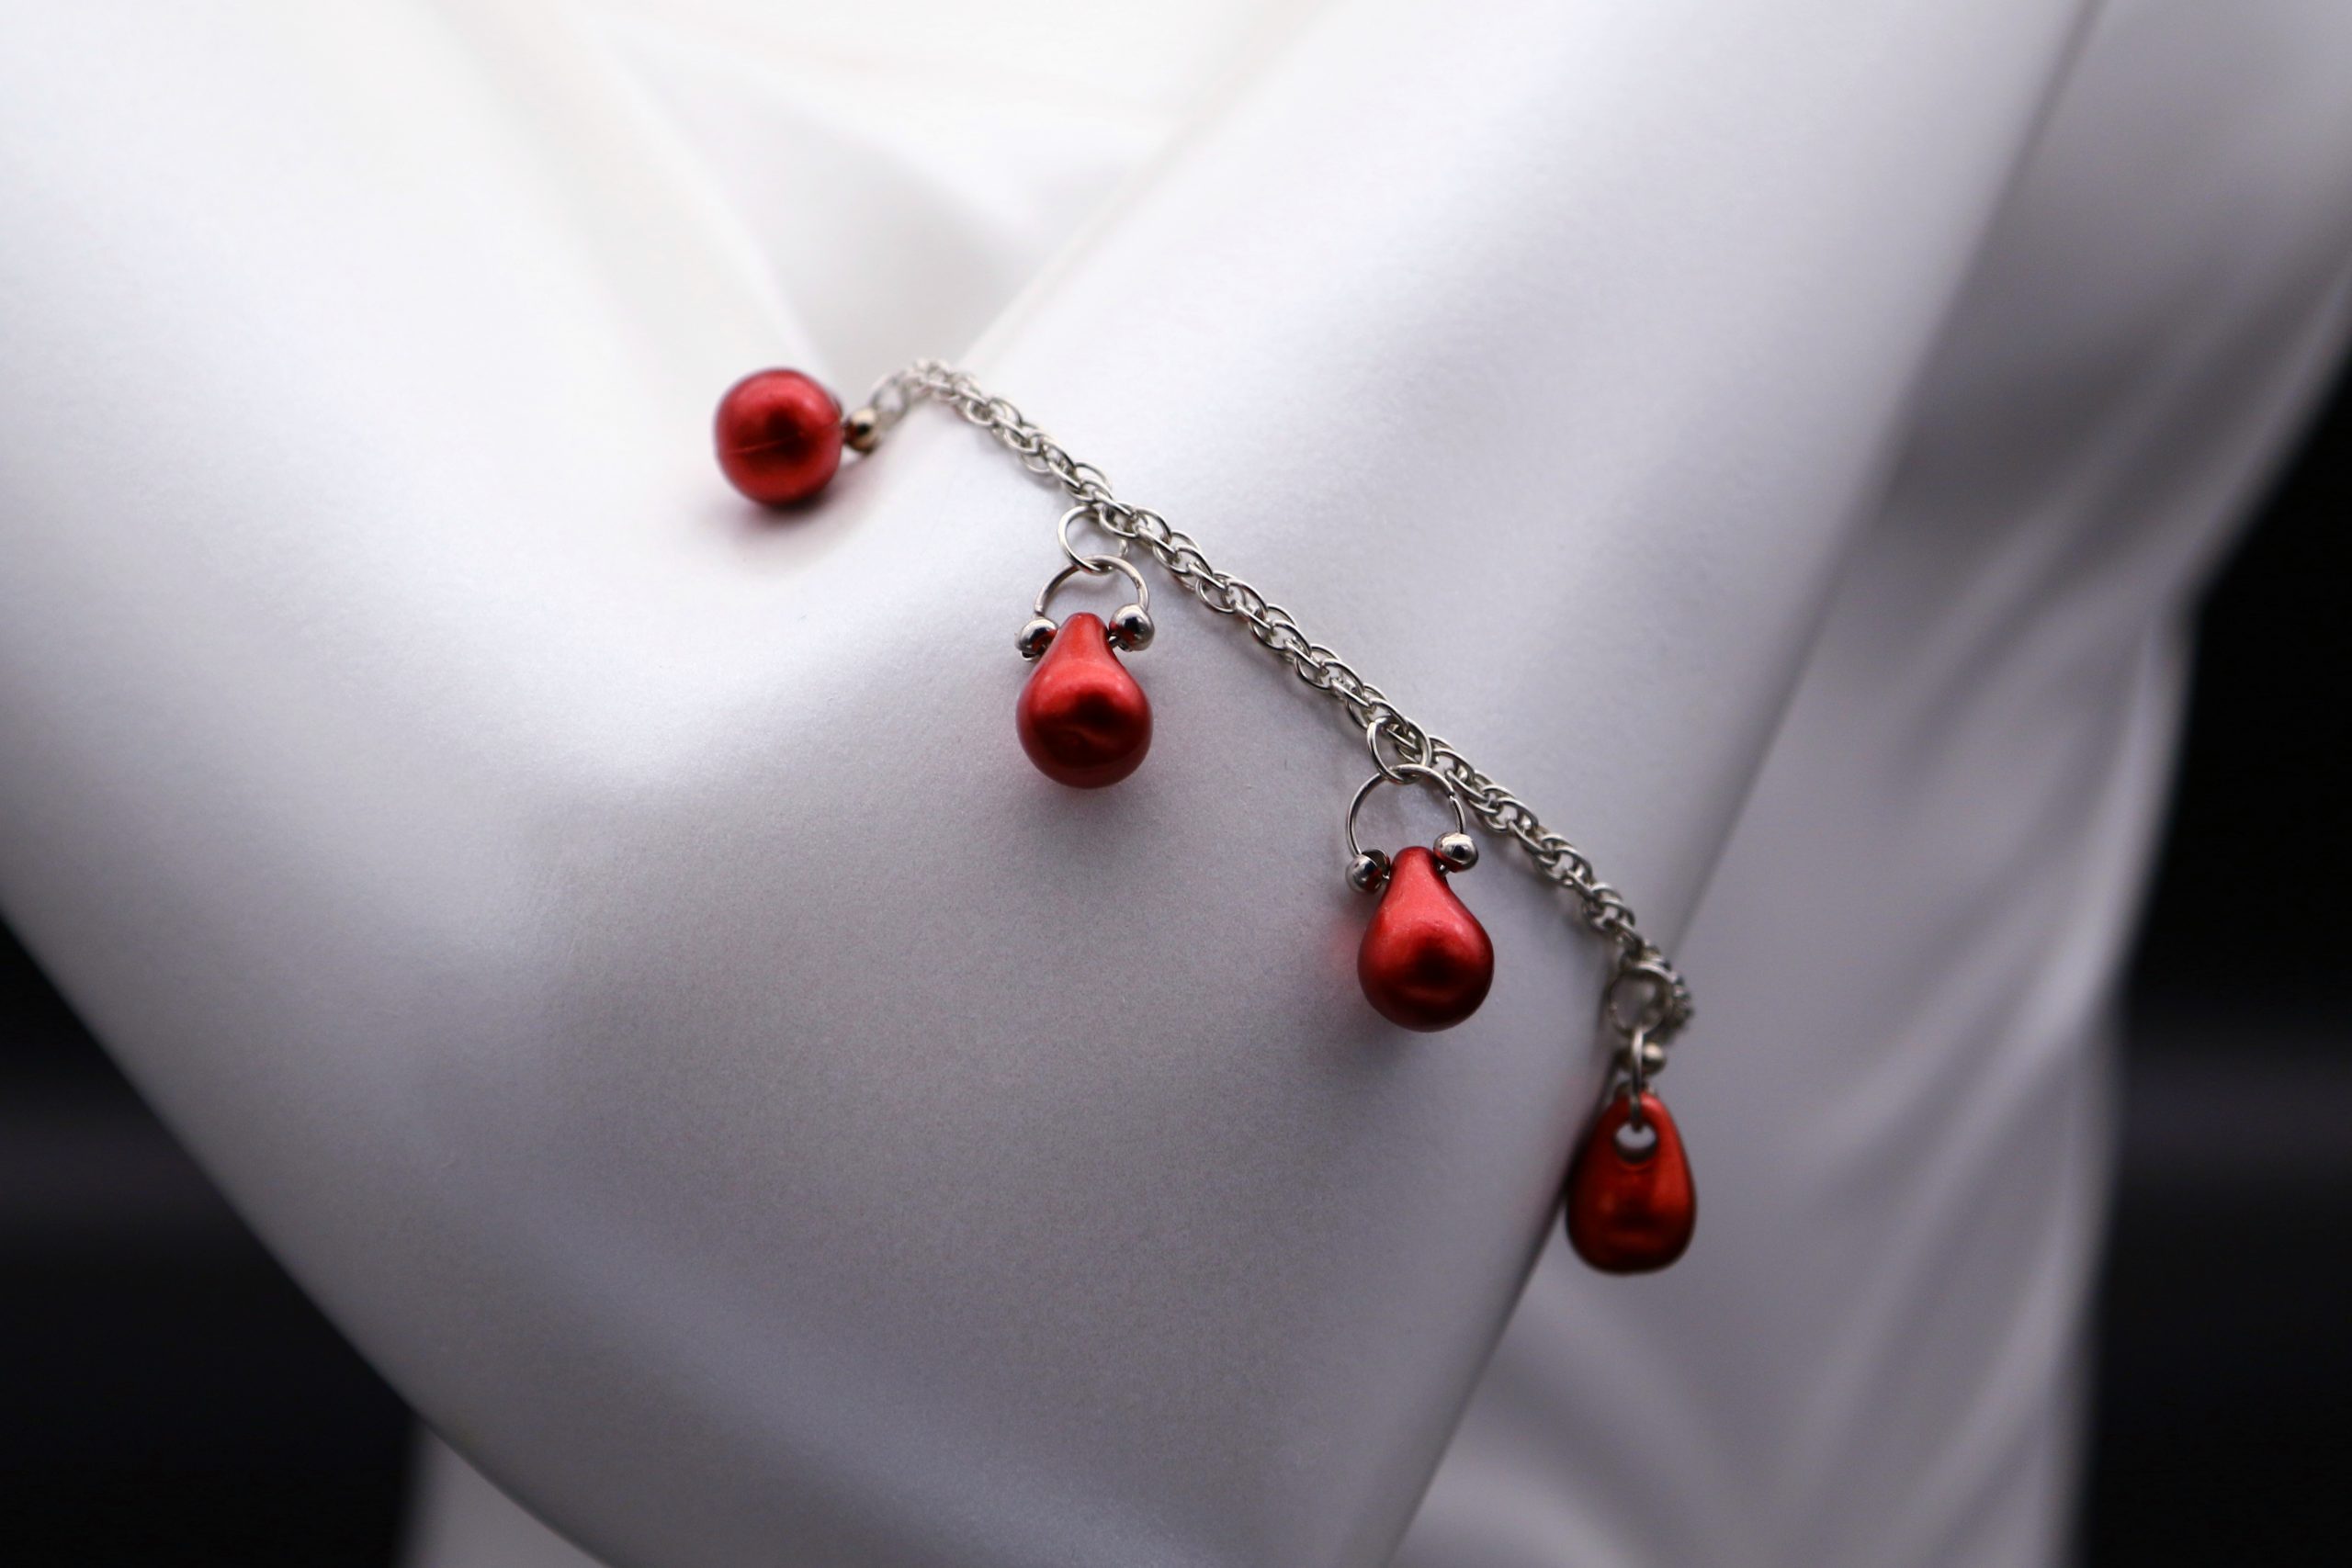 Cherry necklace and bracelet